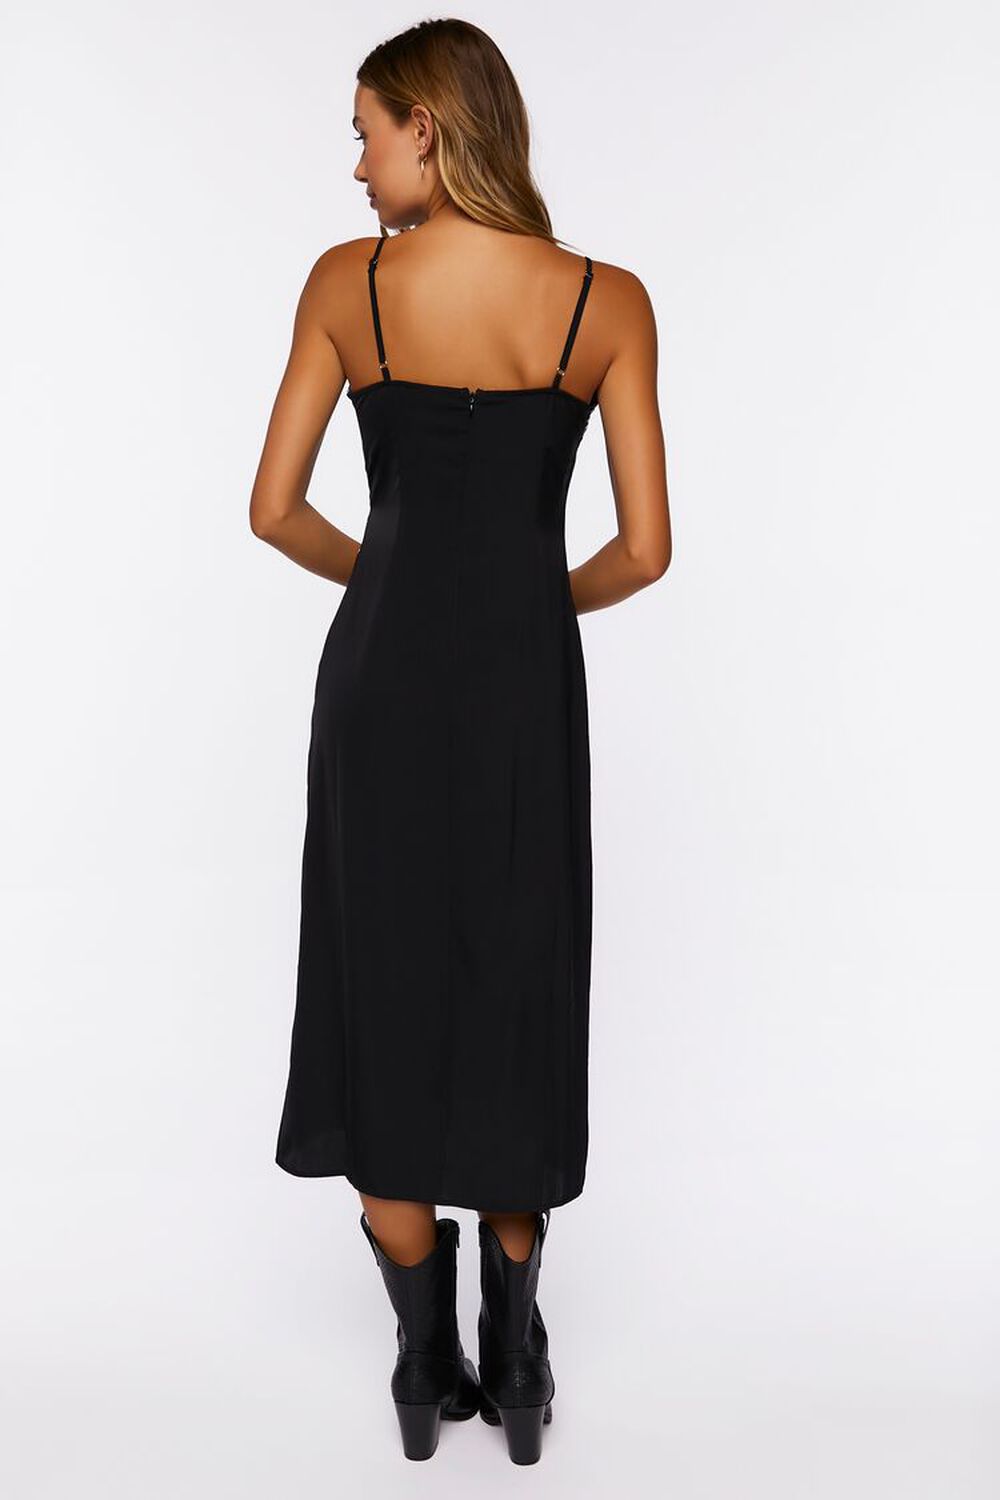 BLACK Satin Floral Applique Slip Dress, image 3